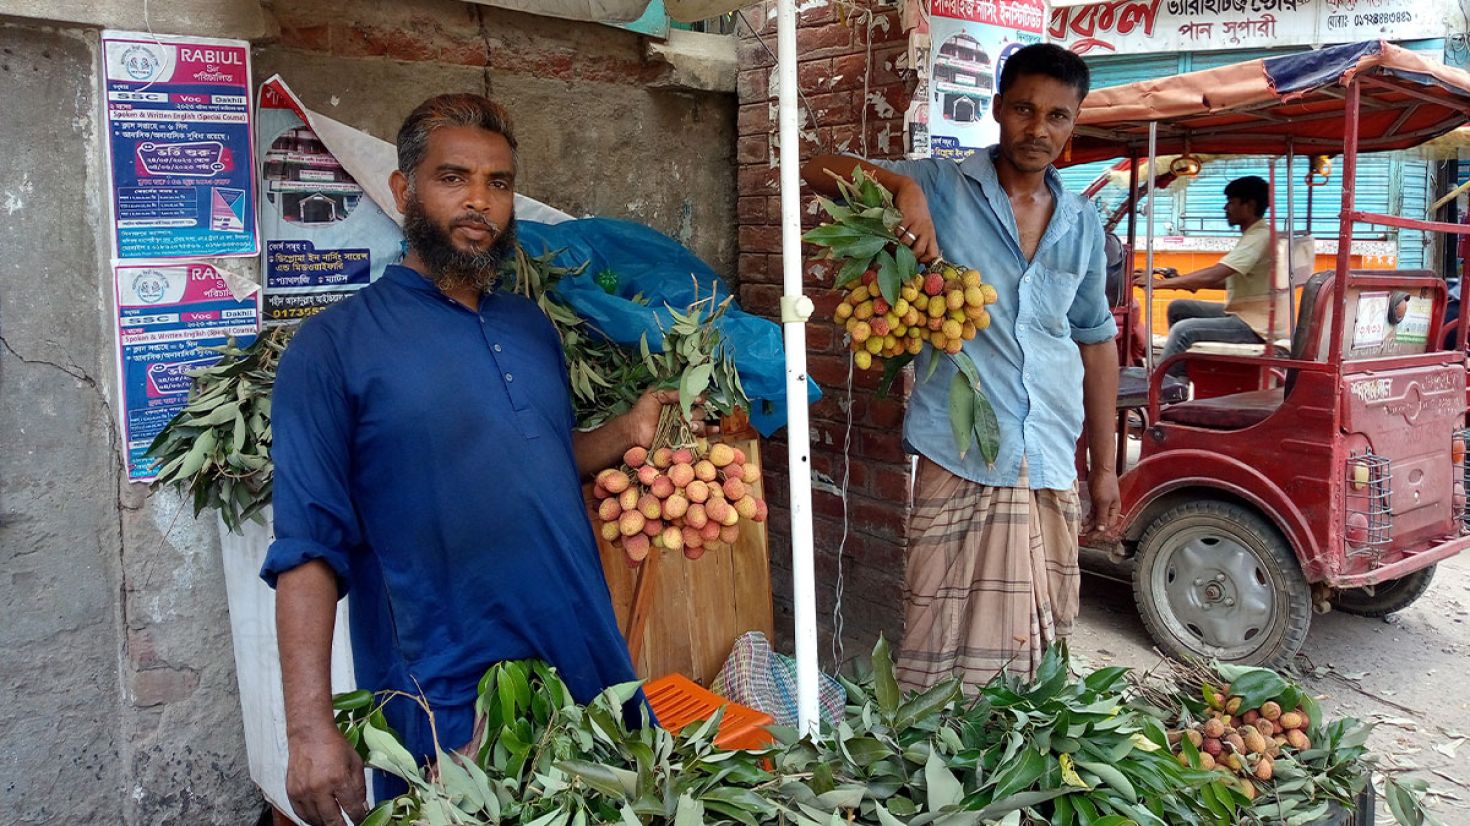 দিনাজপুরের লোভনীয় টসটসে লিচু এখন বাজারে, দাম একটু বেশি